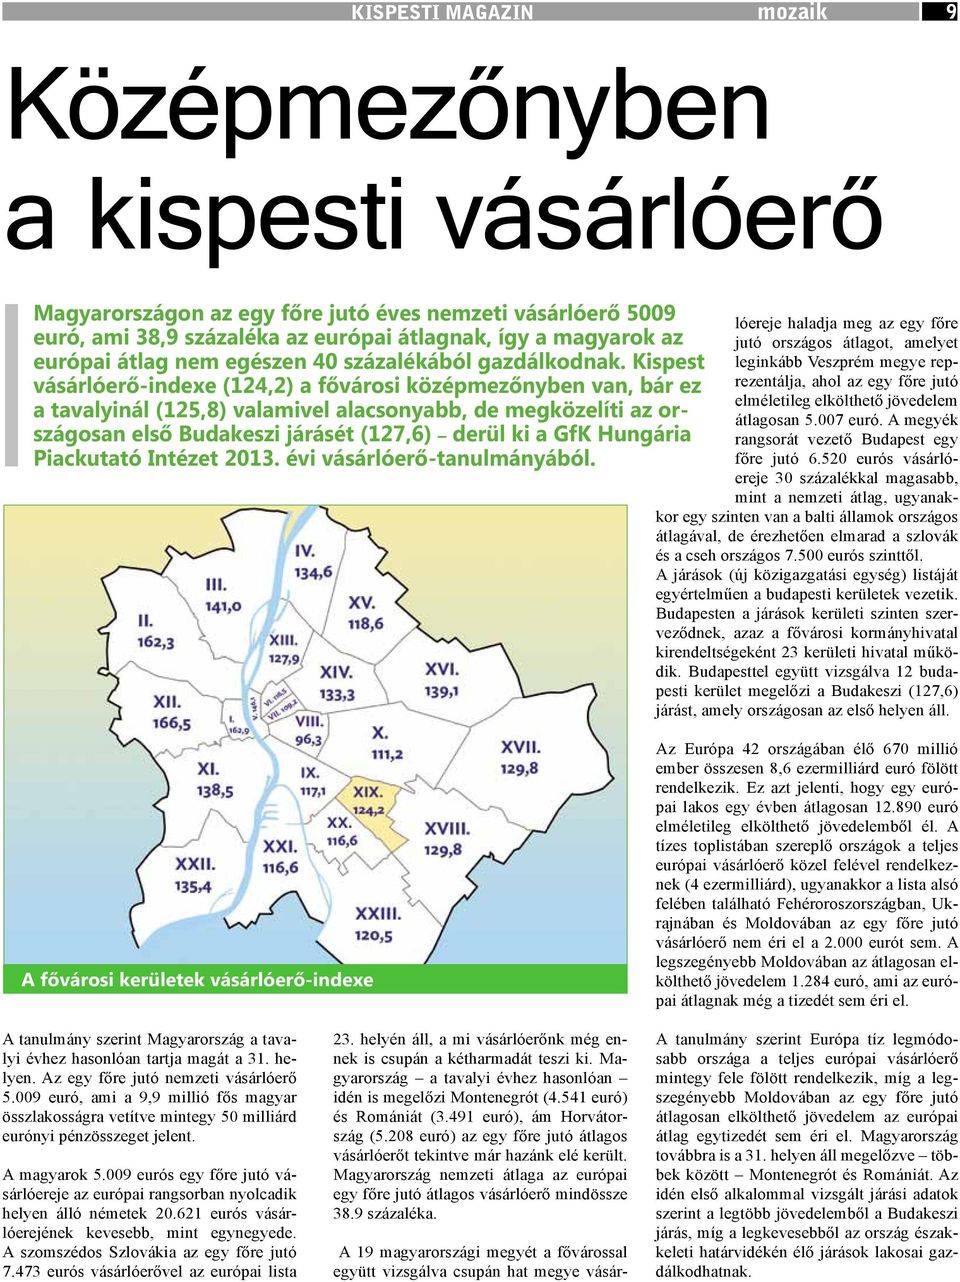 Kispest vásárlóerő-indexe (124,2) a fővárosi középmezőnyben van, bár ez a tavalyinál (125,8) valamivel alacsonyabb, de megközelíti az országosan első Budakeszi járásét (127,6) derül ki a GfK Hungária